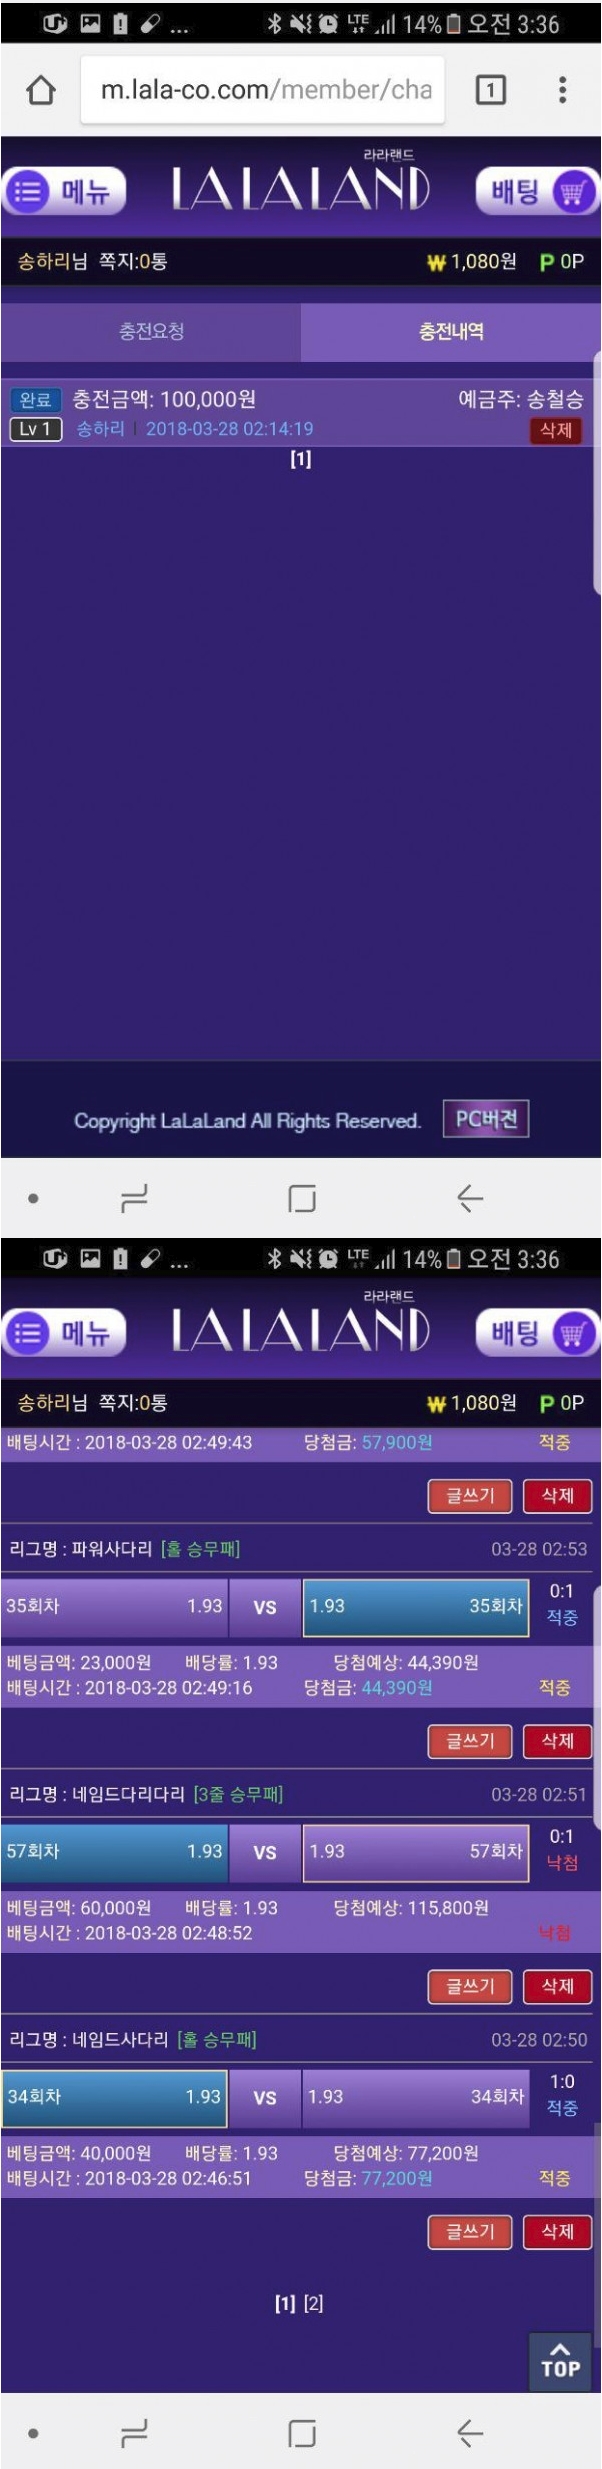 라라랜드 lala-co.com 먹튀